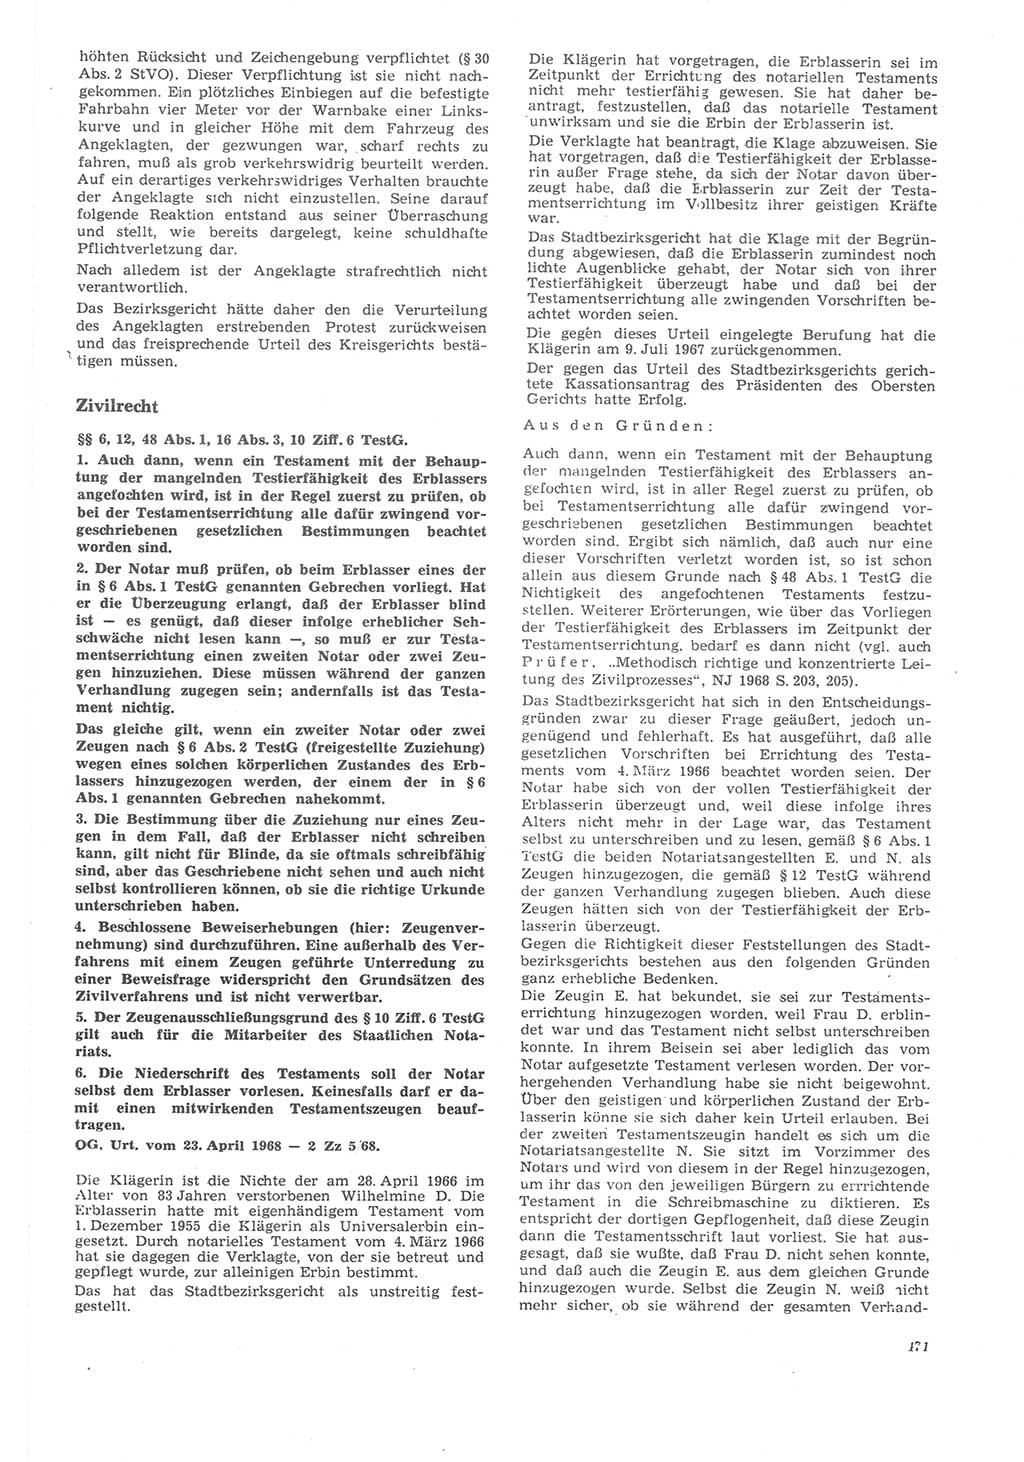 Neue Justiz (NJ), Zeitschrift für Recht und Rechtswissenschaft [Deutsche Demokratische Republik (DDR)], 22. Jahrgang 1968, Seite 471 (NJ DDR 1968, S. 471)